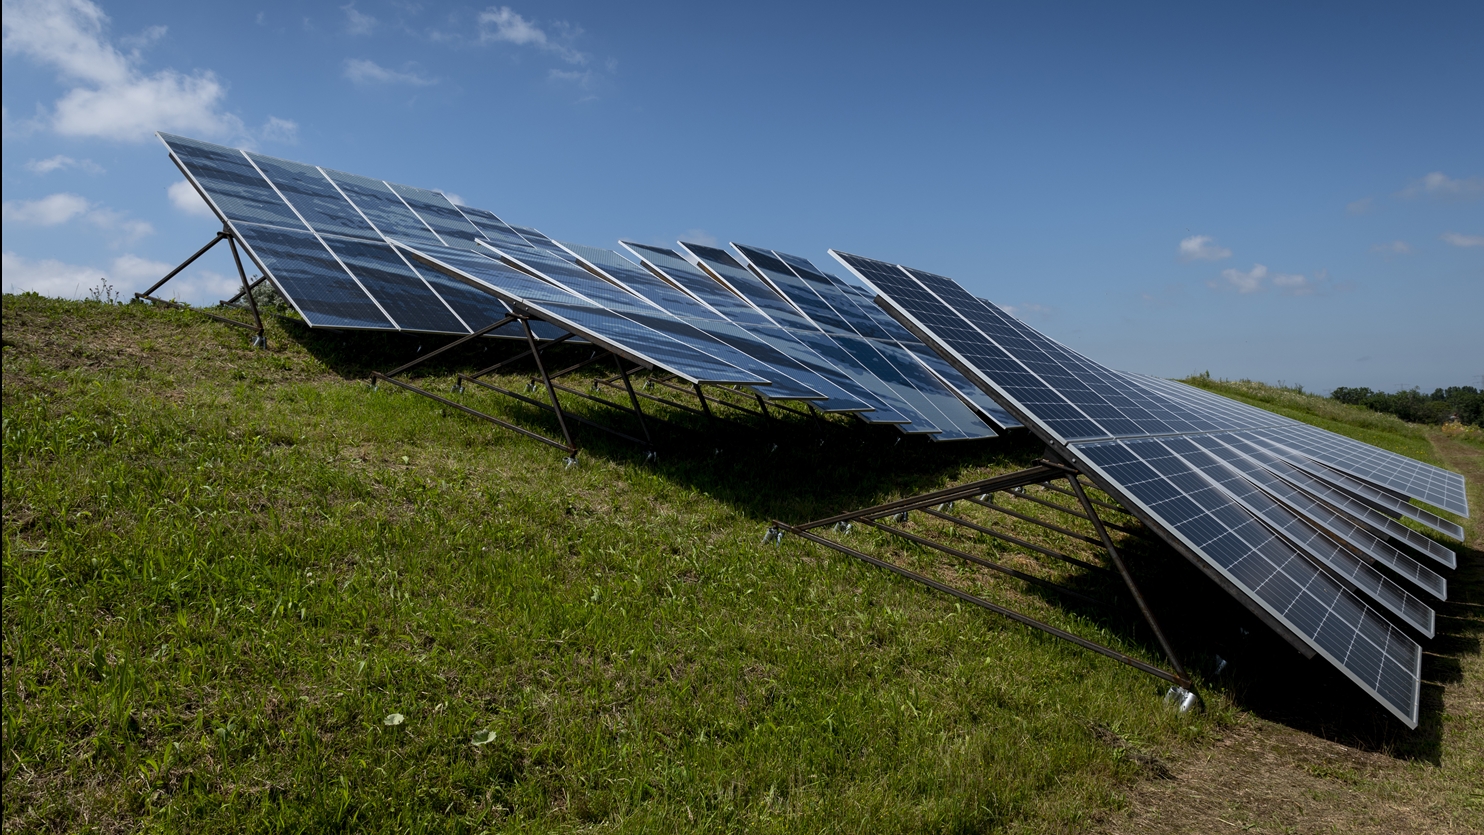 Overview solar farm